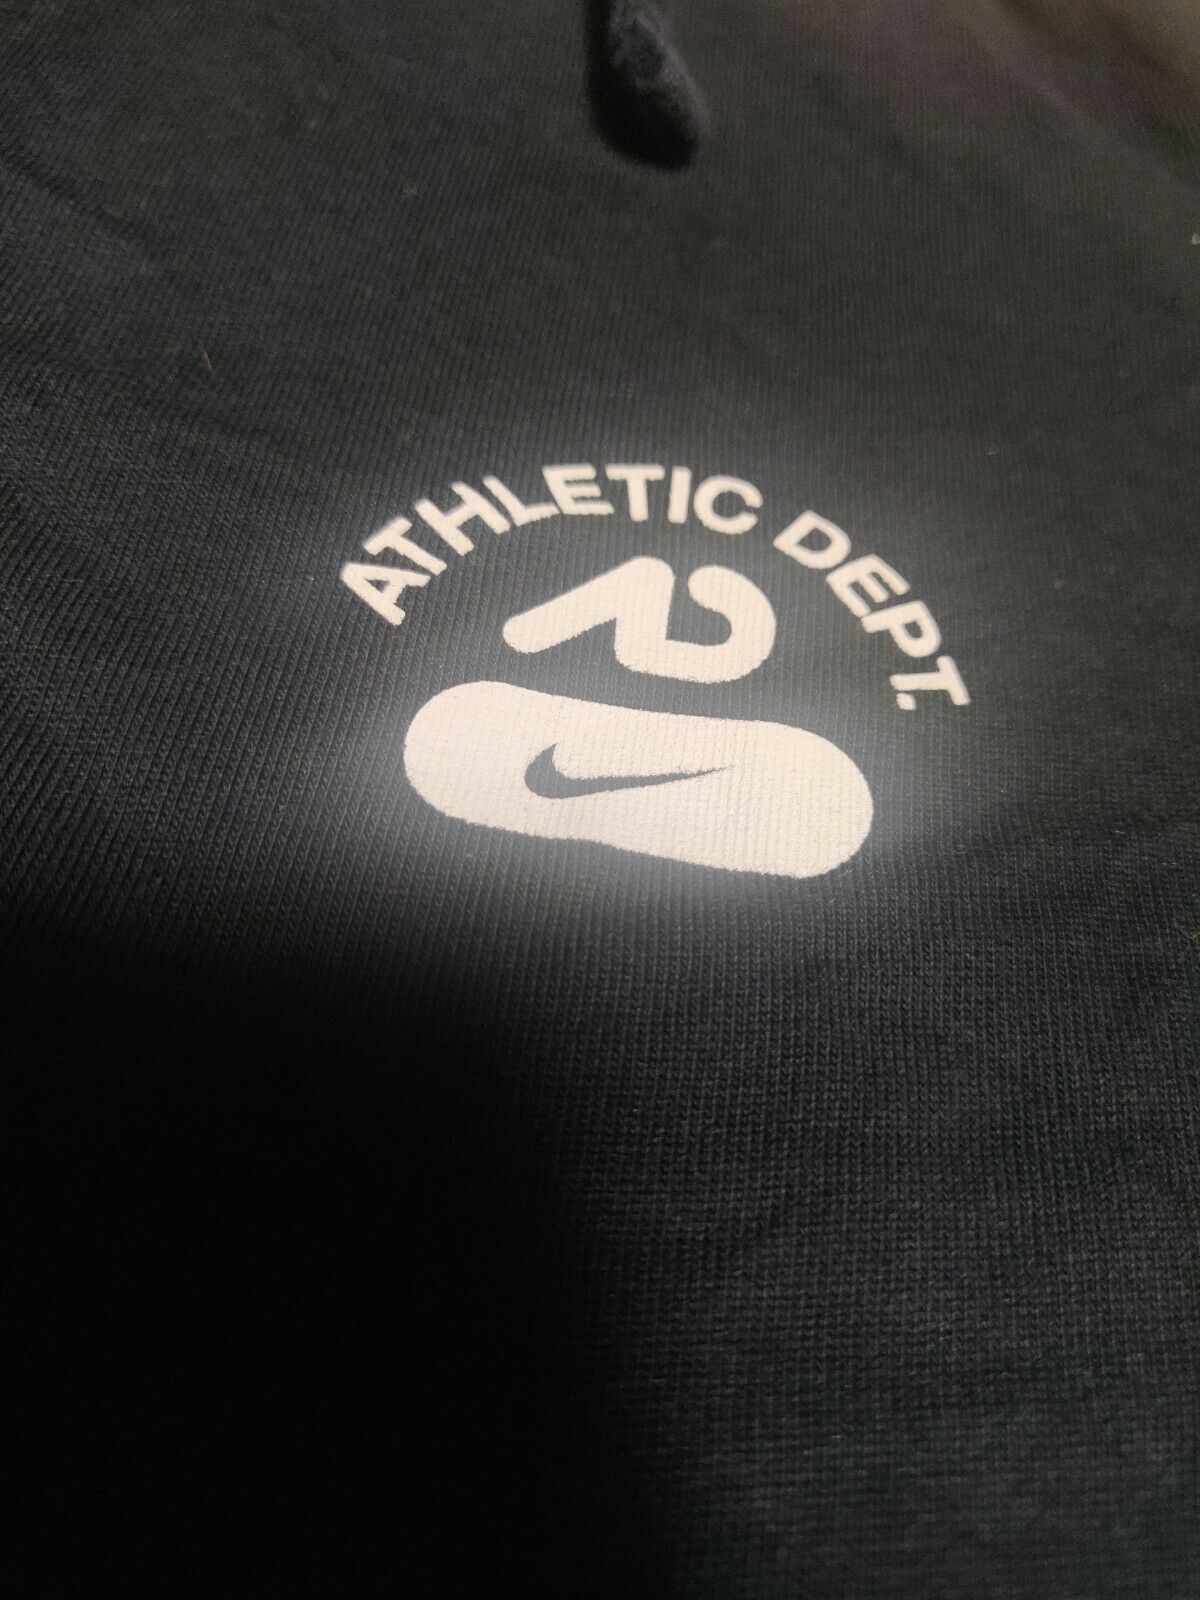 Nike Athletic Dept Vintage Black Hoodie Sweatshirt Long Sleeve Men Size Large